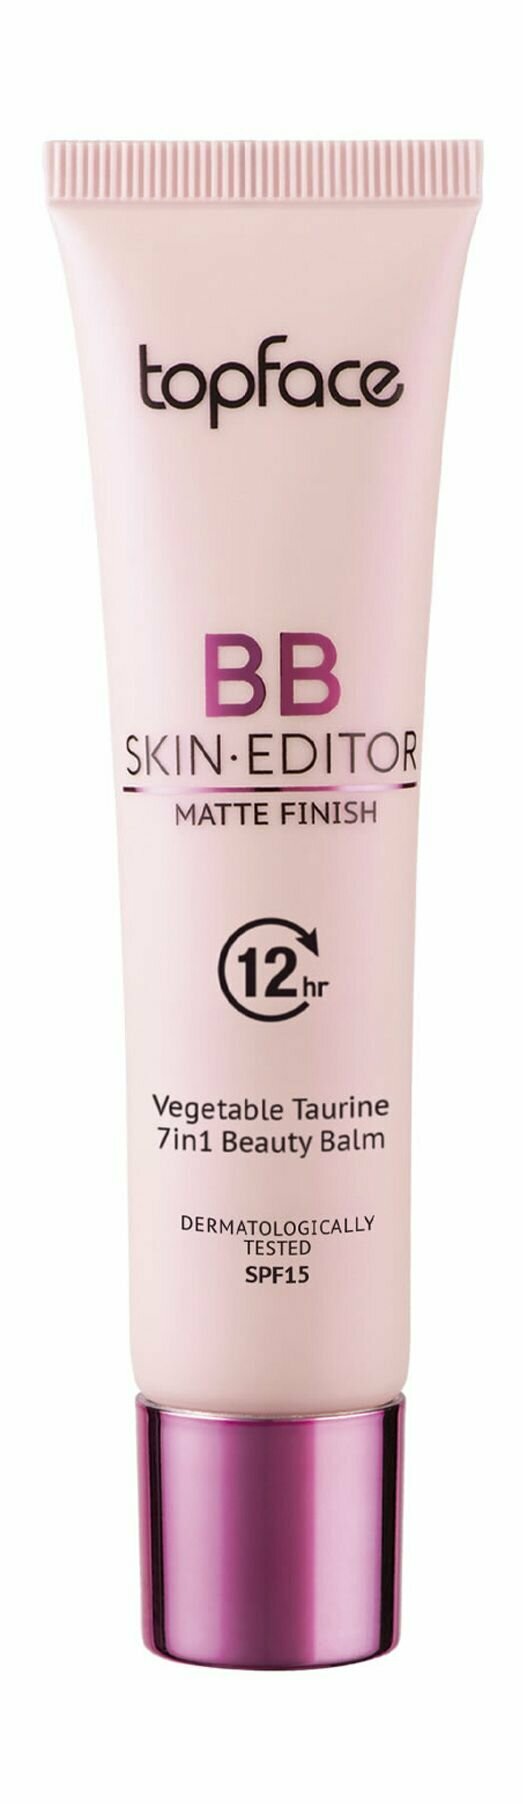 Тональный ВВ-крем с легким матовым финишем / 1 1 / Topface Skin Editor Matte Finish BB Foundation SPF 15